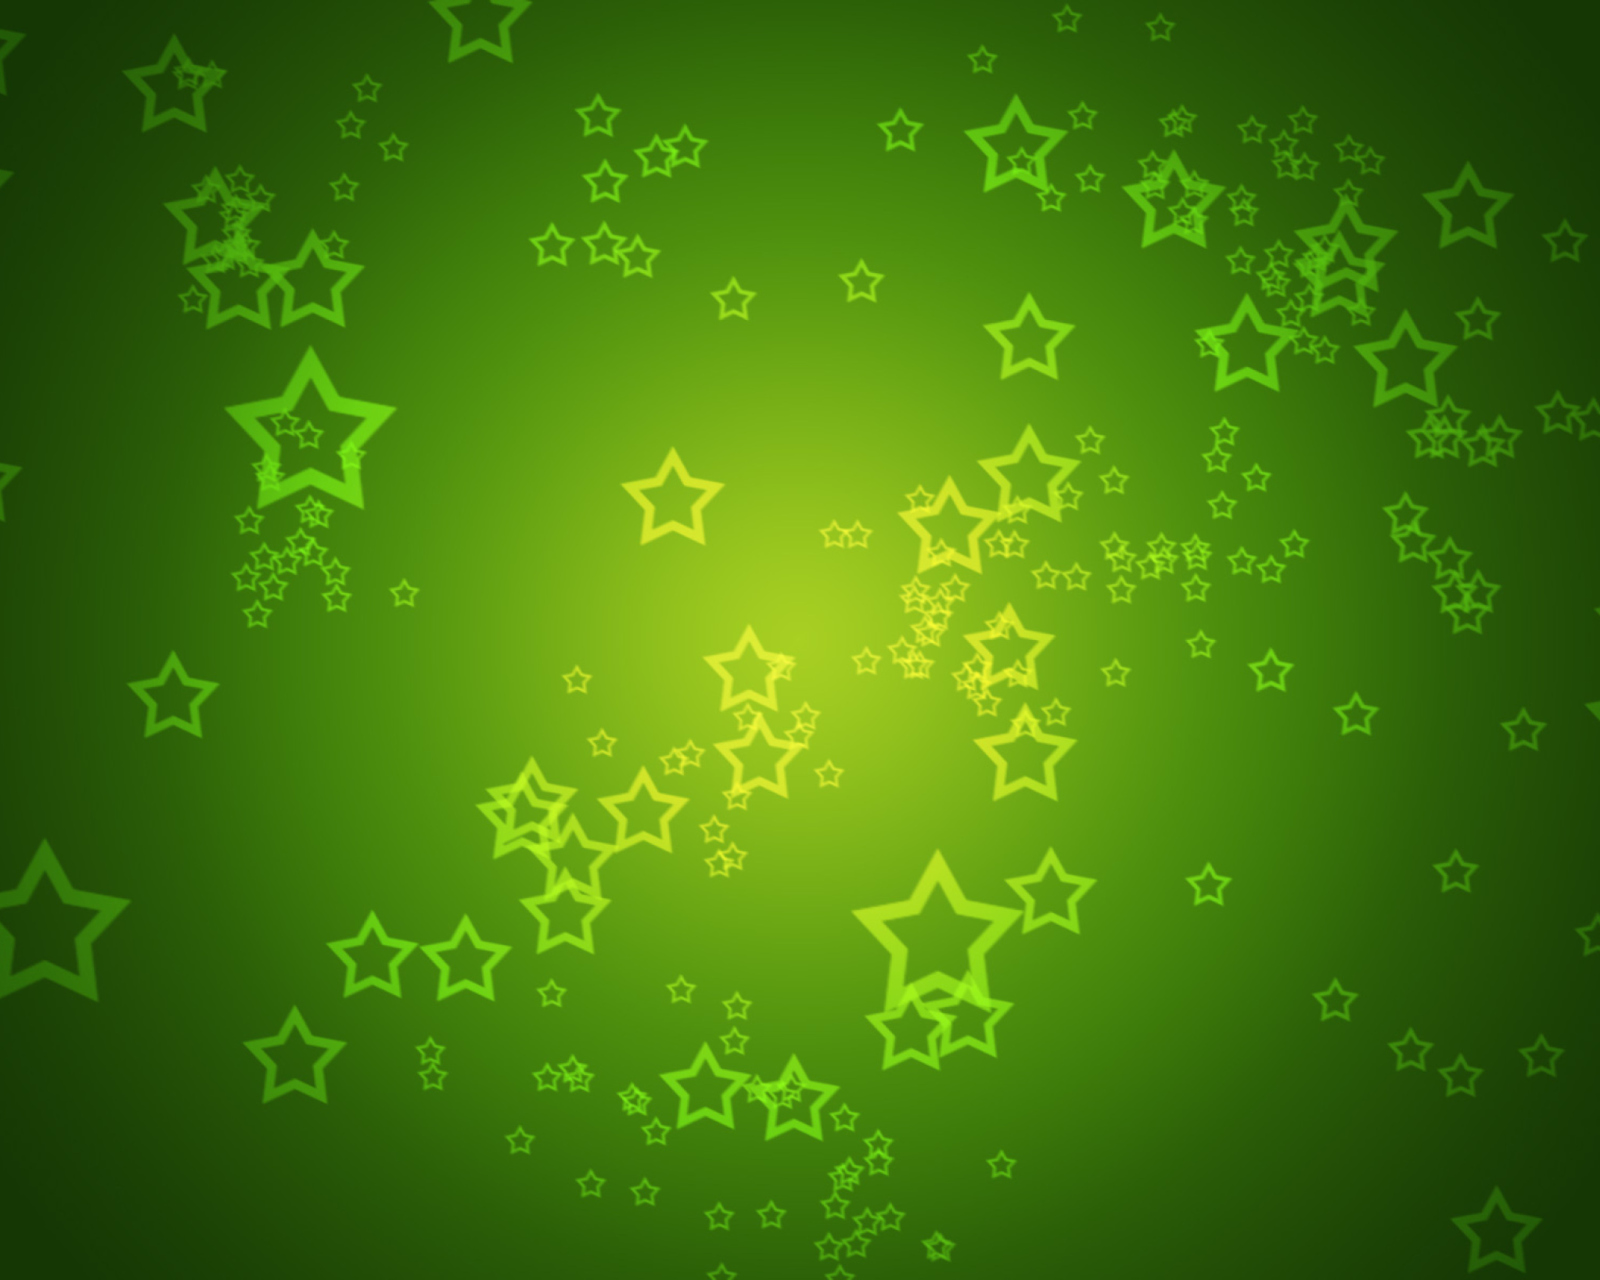 Green Stars wallpaper 1600x1280